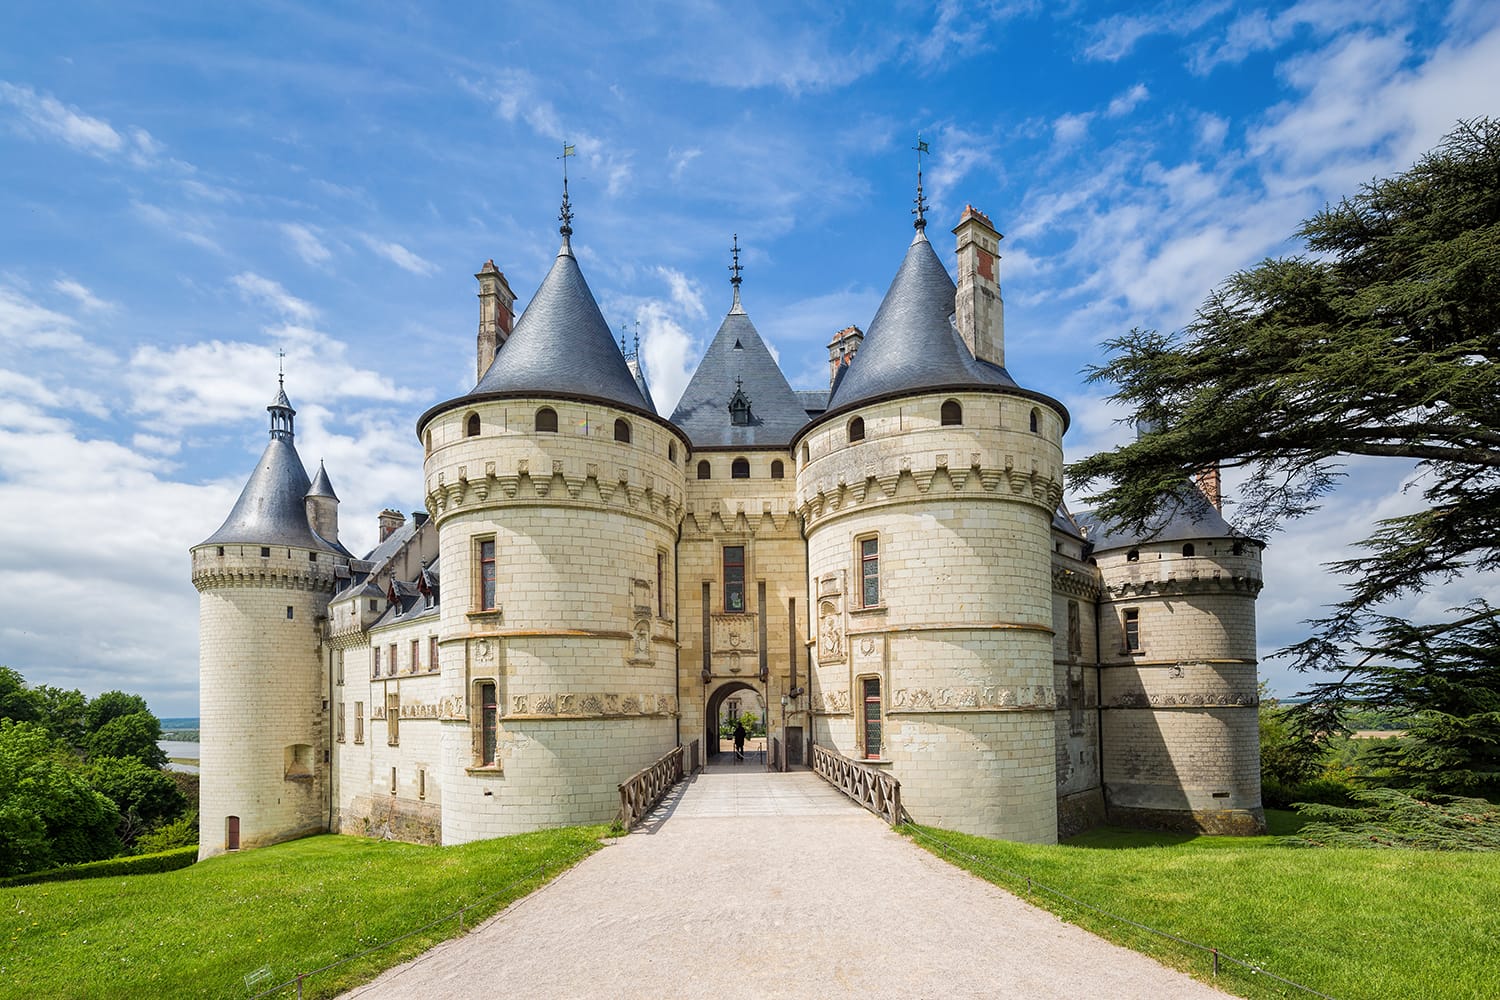 The Château de Chaumont castle in Chaumont-sur-Loire, Loir-et-Cher, France